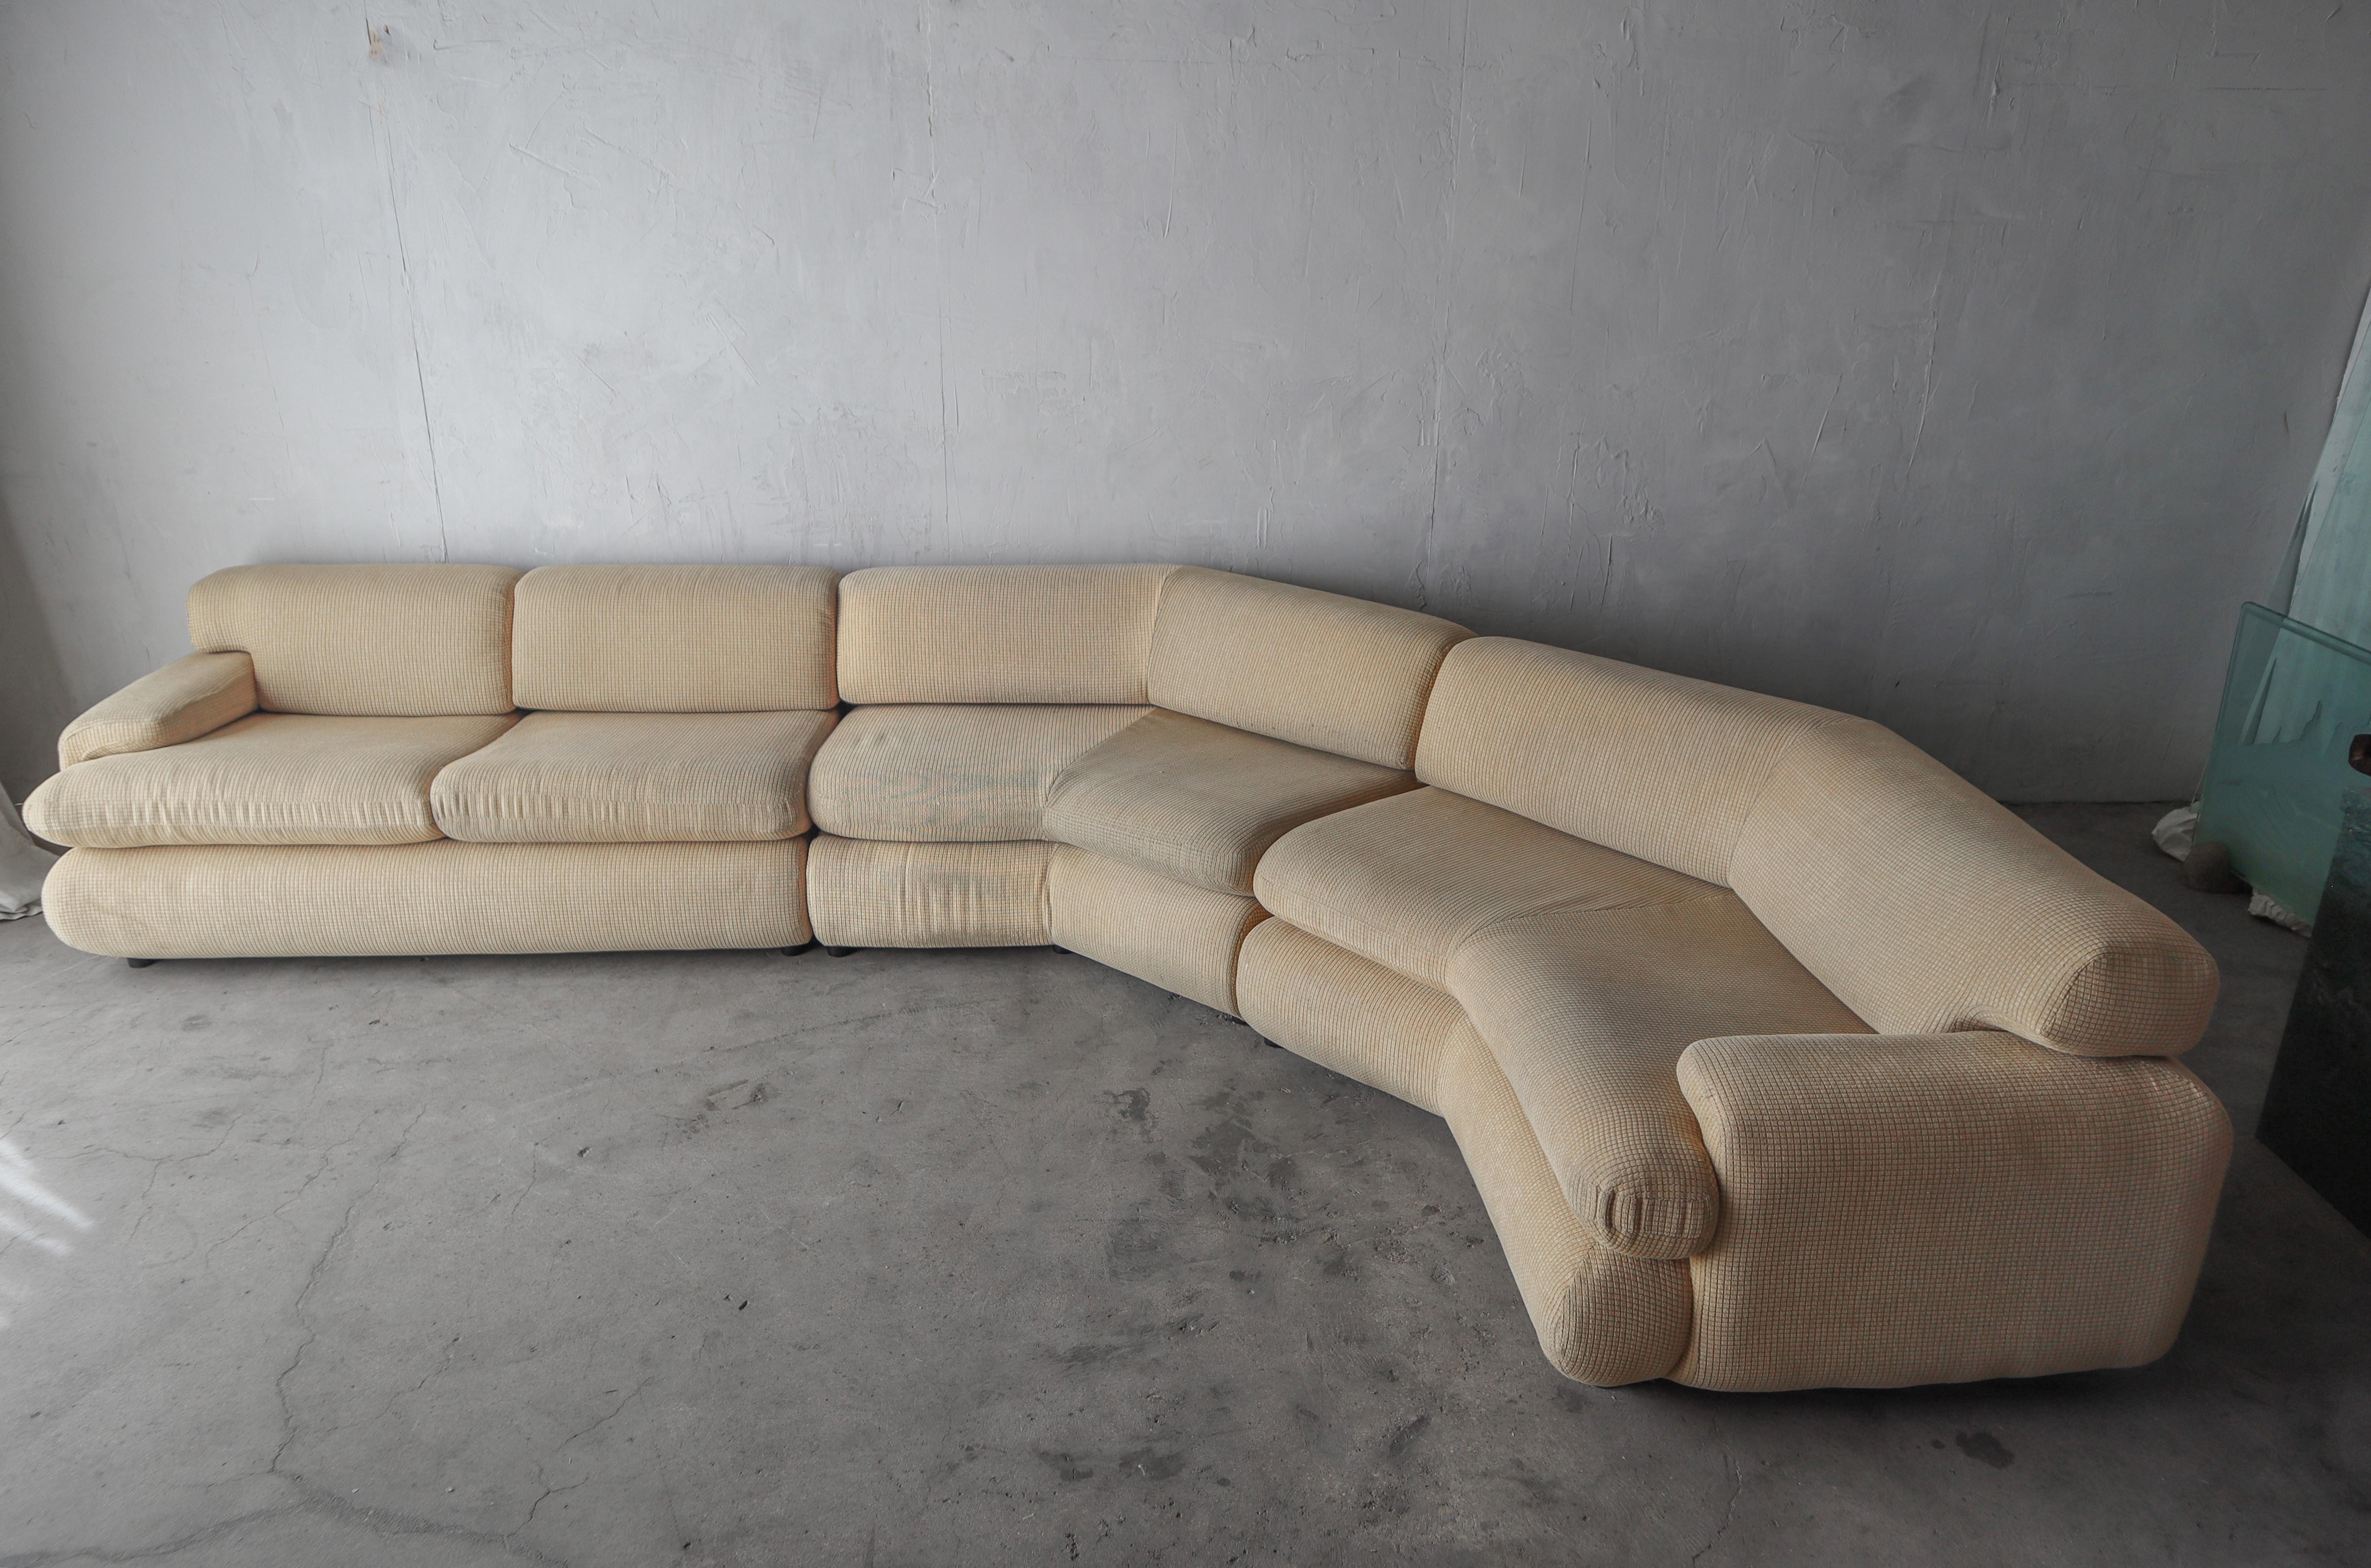 Dieses 3-teilige Preview-Sectional-Sofa ist großartig.  Ich liebe die Details, sie machen das Design so interessant.  So wird aus einer einfachen Sitzgruppe ein echtes Designerstück.

Das Sofa wird verkauft wie gefunden.  Der Rahmen ist solide und